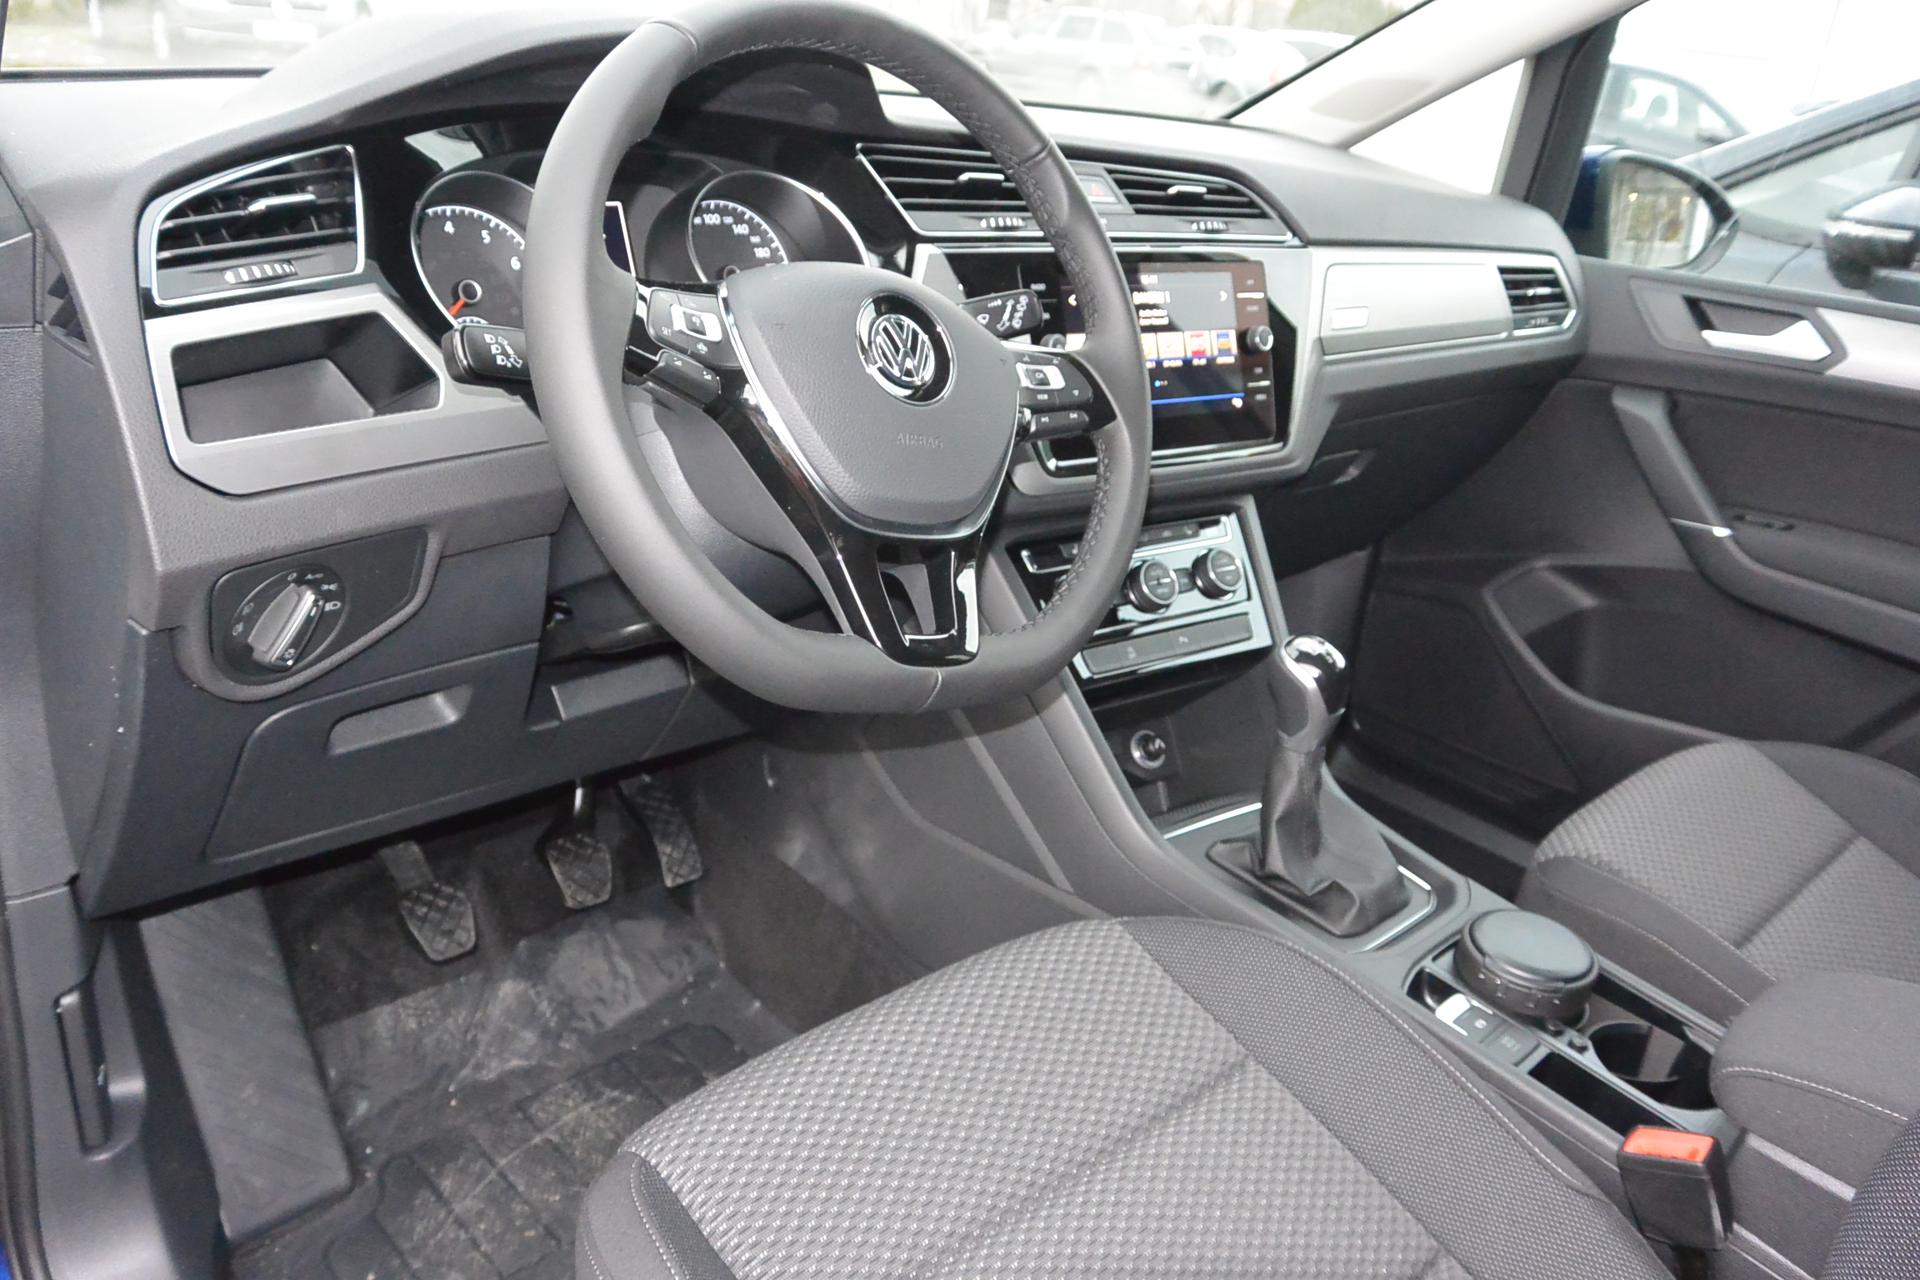 VW Touran EU-Neuwagen günstig kaufen bei europemotors.de GmbH in Neufinsing bei München